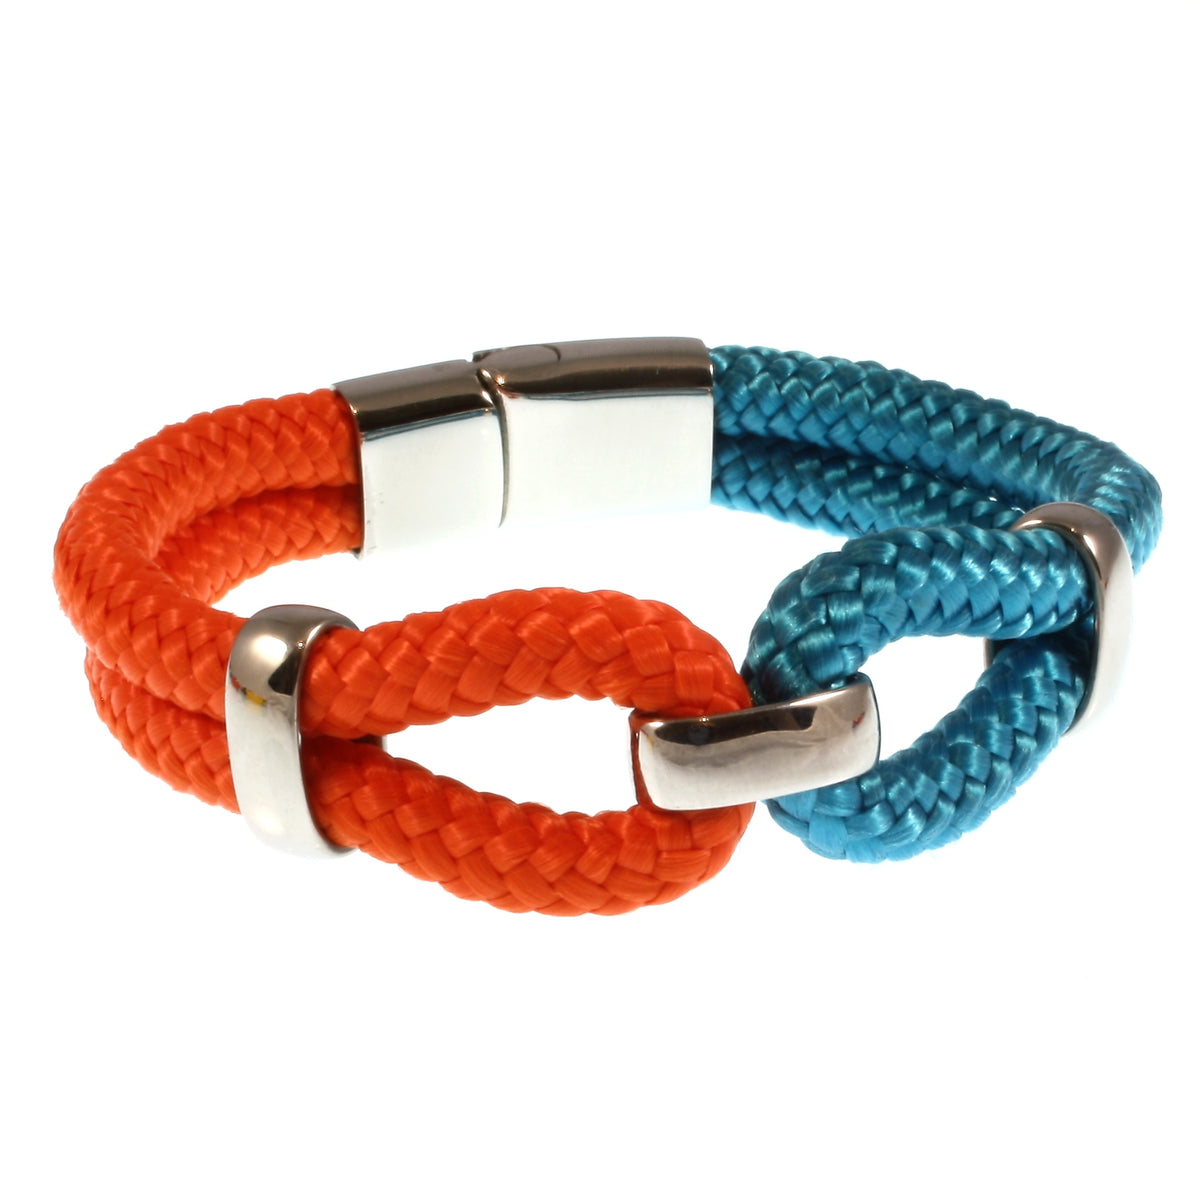 Damen-Segeltau-armband-roma-blau-orange-geflochten-Edelstahlverschluss-vorn-wavepirate-shop-st